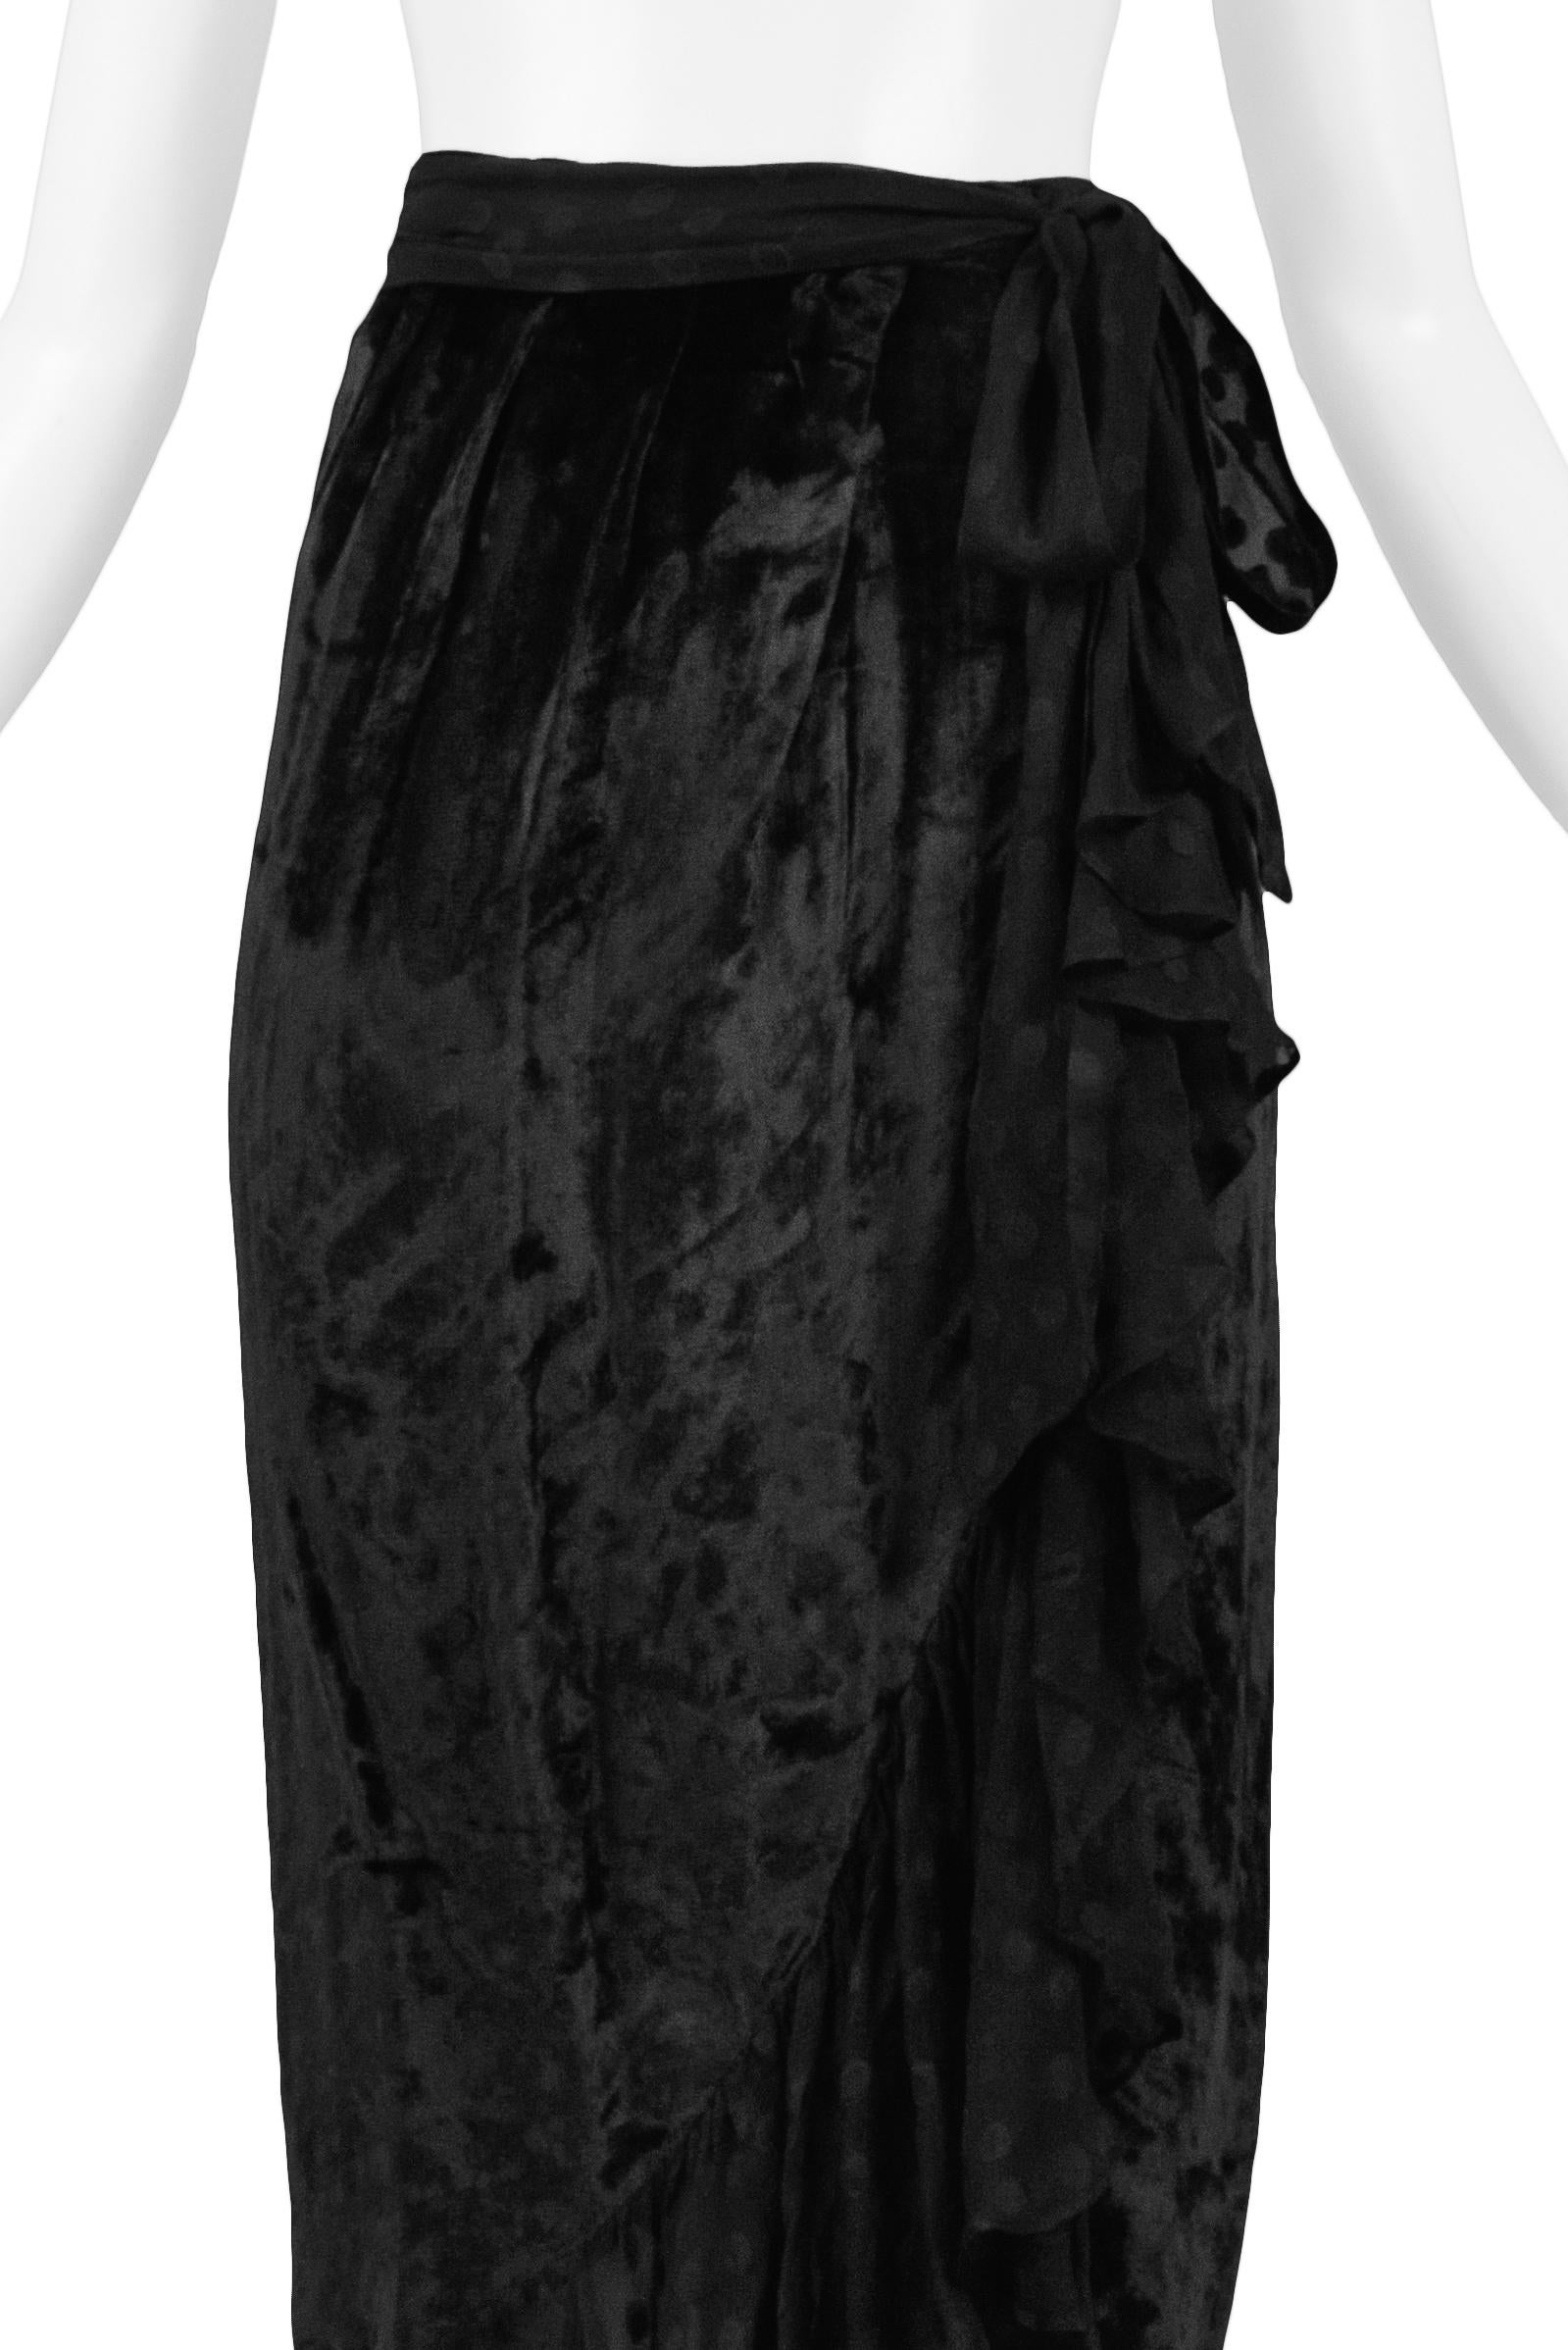 Women's Yves Saint Laurent YSL Black Velvet & Chiffon Dot Ruffle Evening Skirt